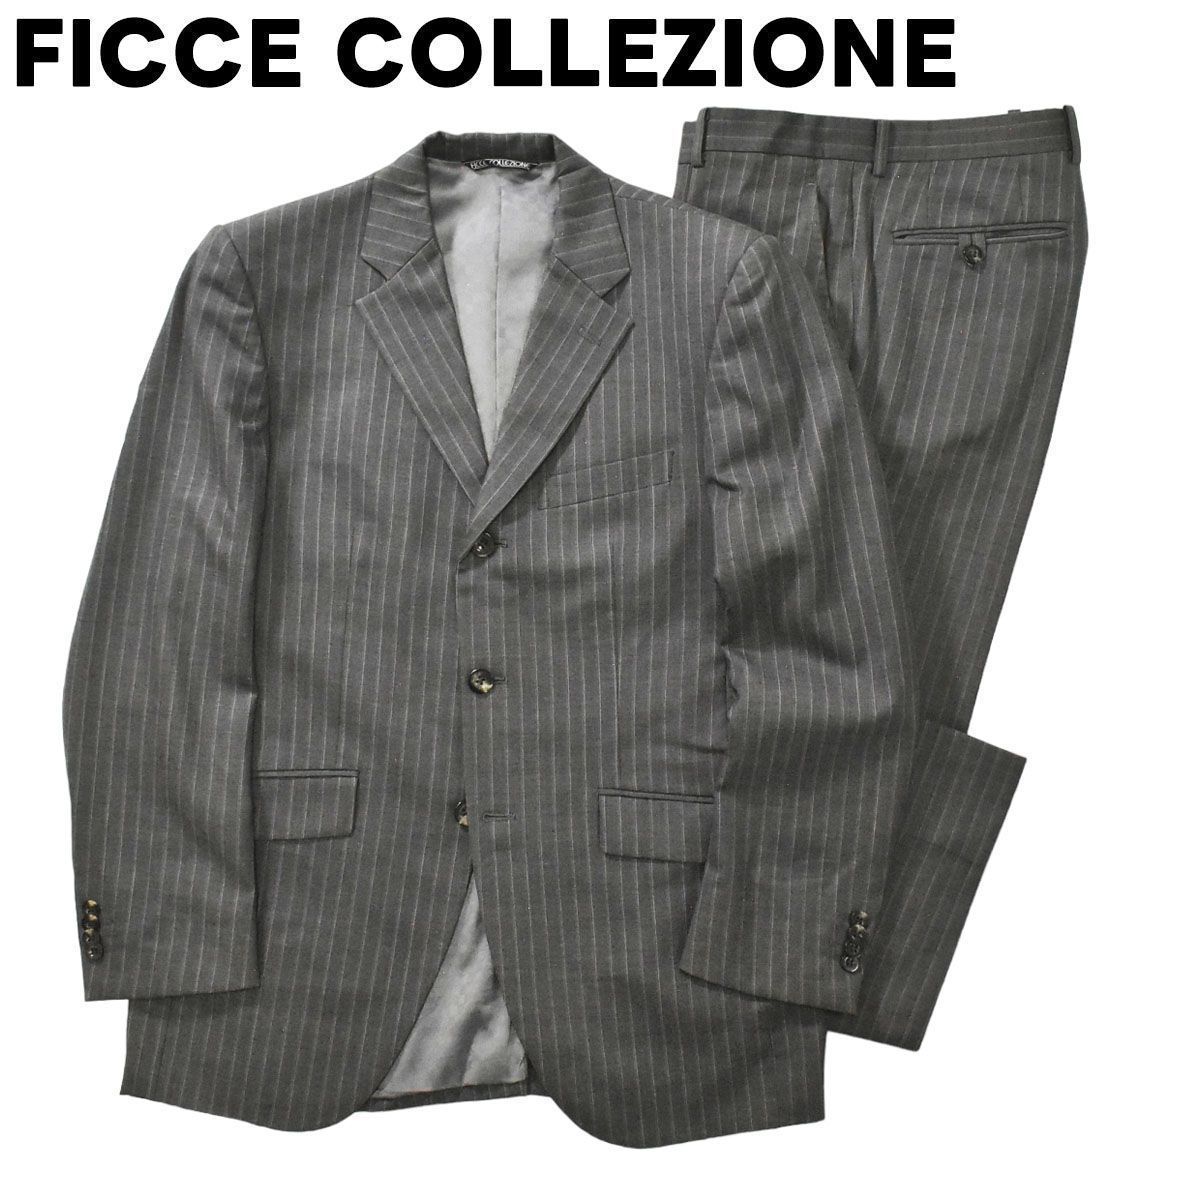 フィッチェ コレッツィオーネ FICCE COLEZIONI by - スーツ